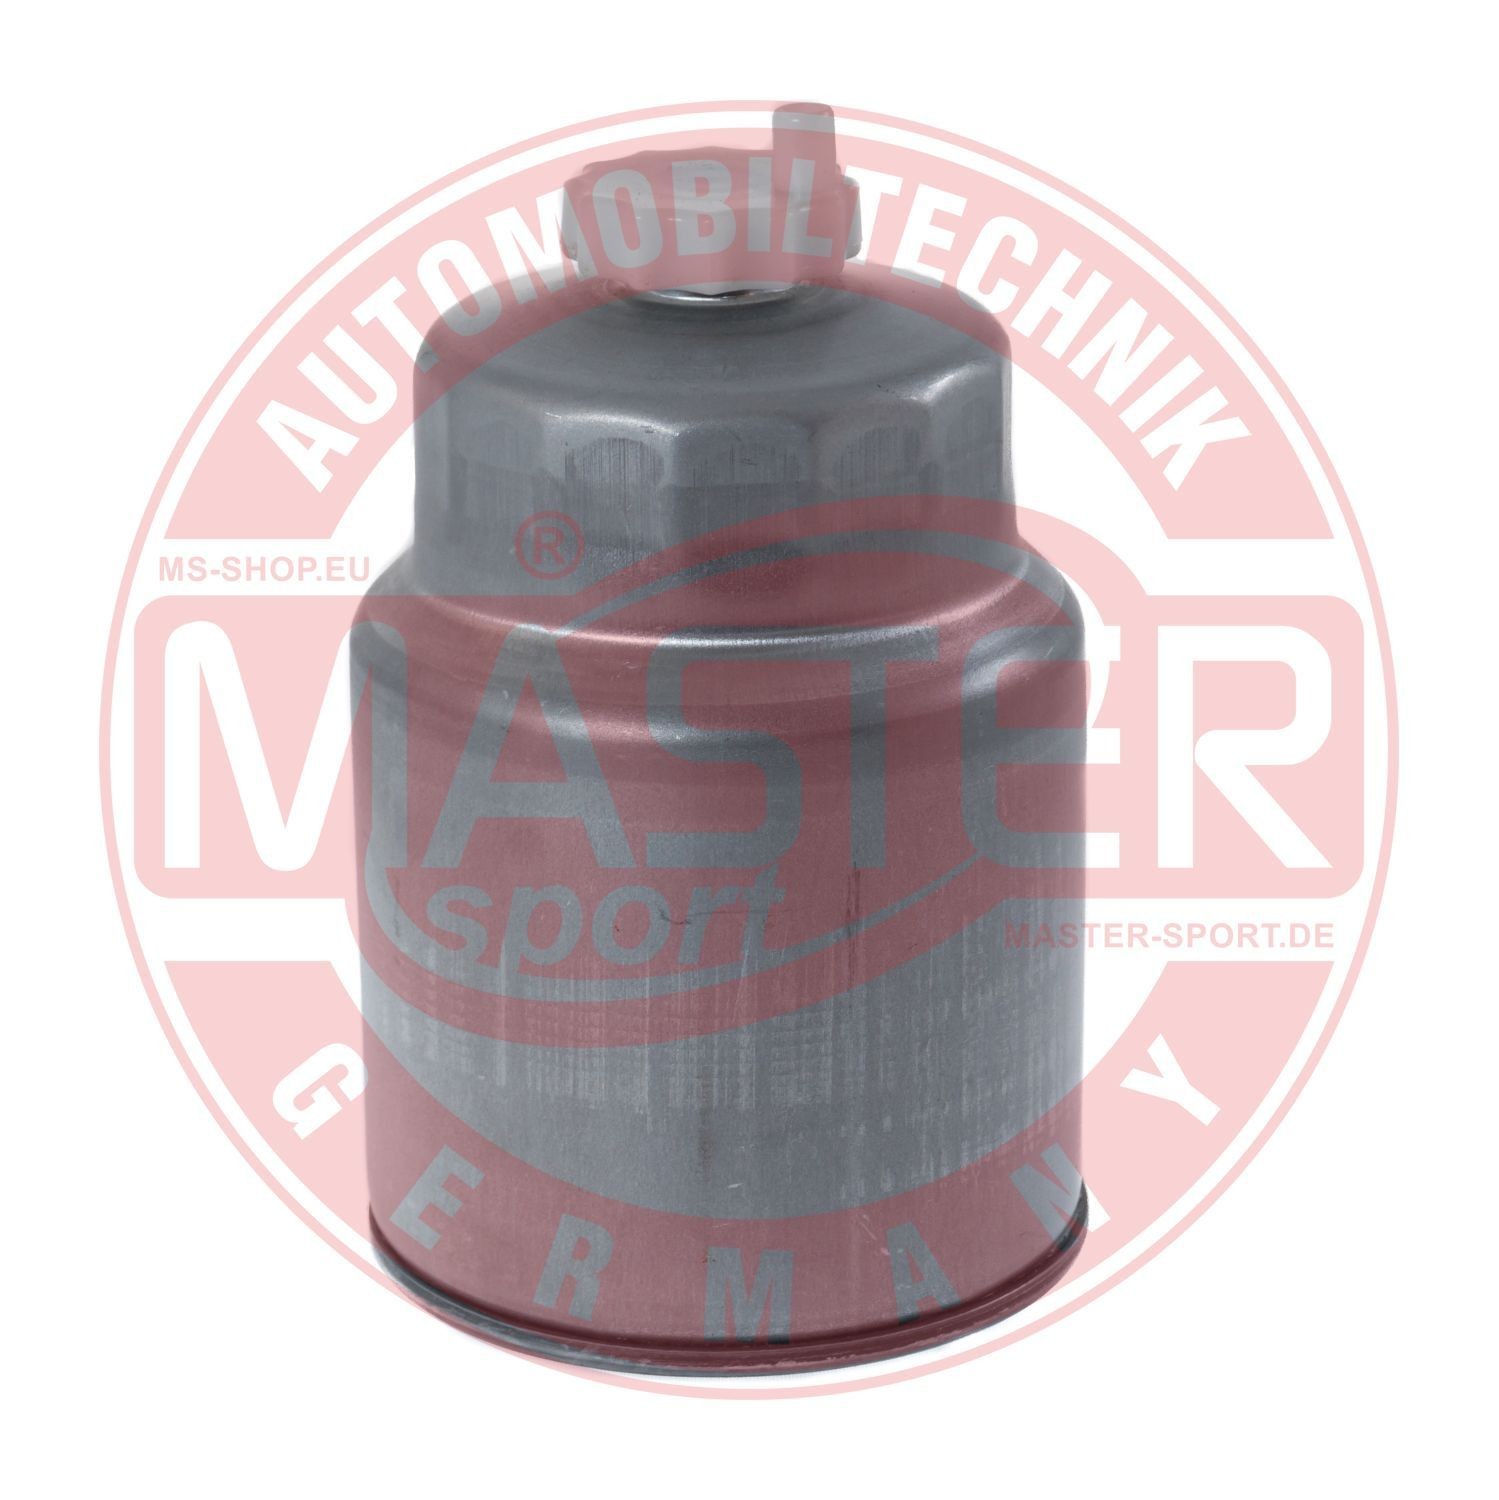 430940220 MASTER-SPORT 940/22-KF-PCS-MS Fuel filter 1640 37F 40B